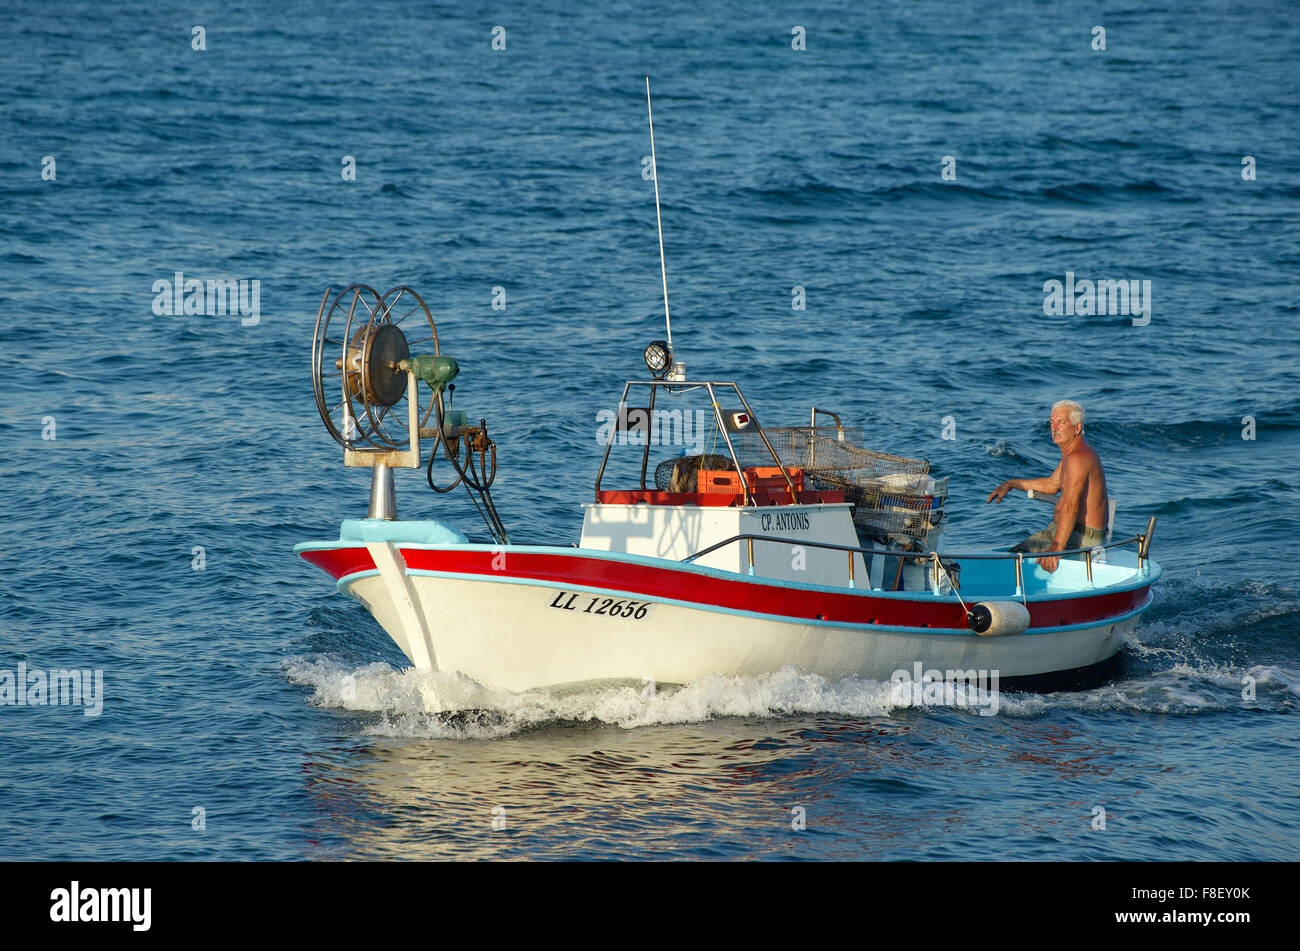 Nage pêcheur sur son bateau de pêche dans la mer dans le soleil couchant, Ayia Napa Banque D'Images